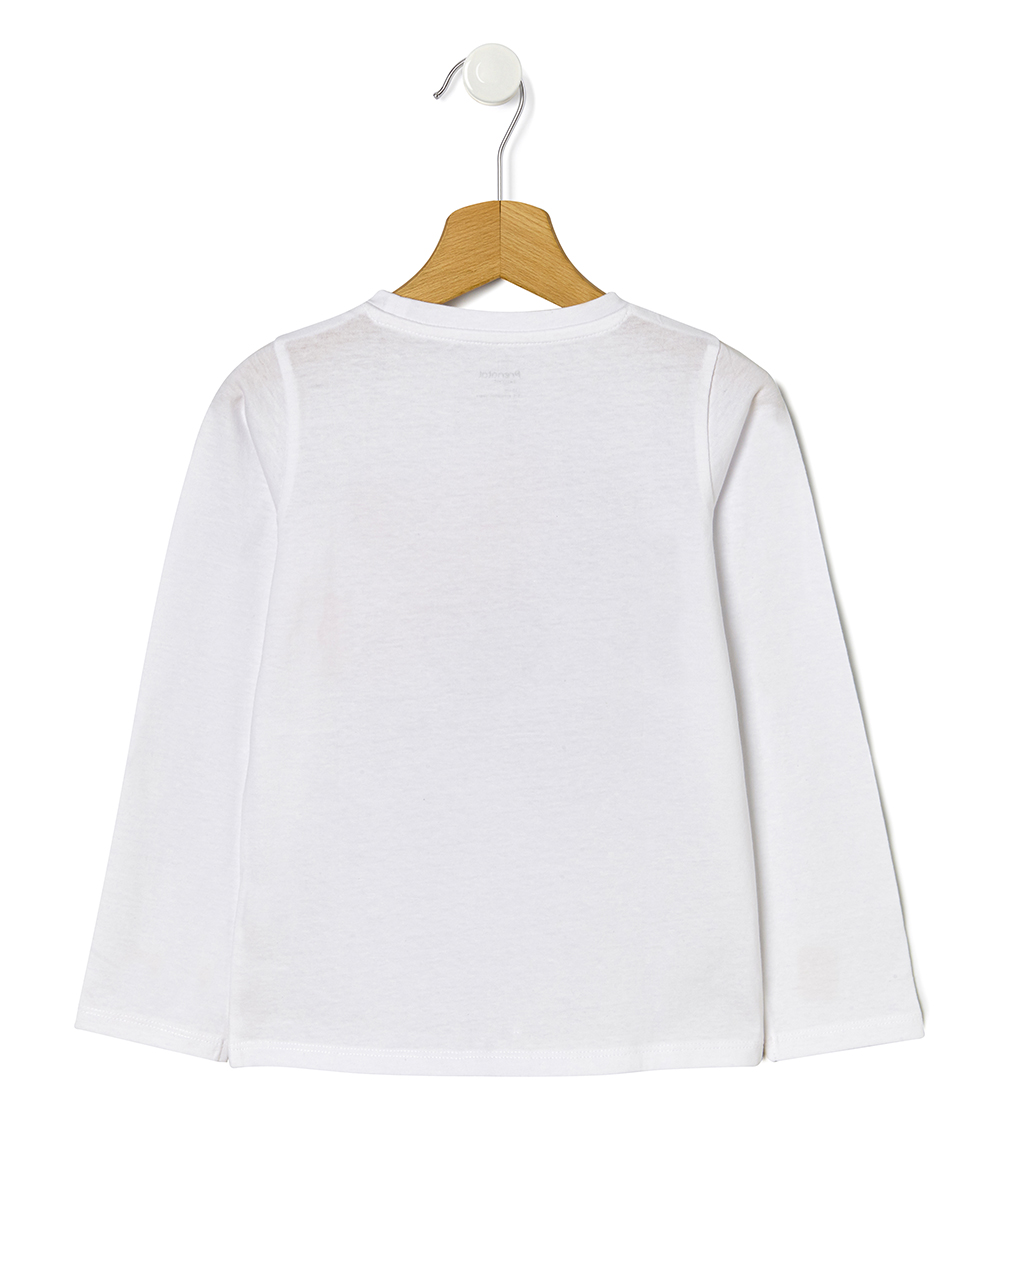 μπλούζα μακρυμάνικη jersey λευκή με στάμπα για κορίτσι - Prénatal